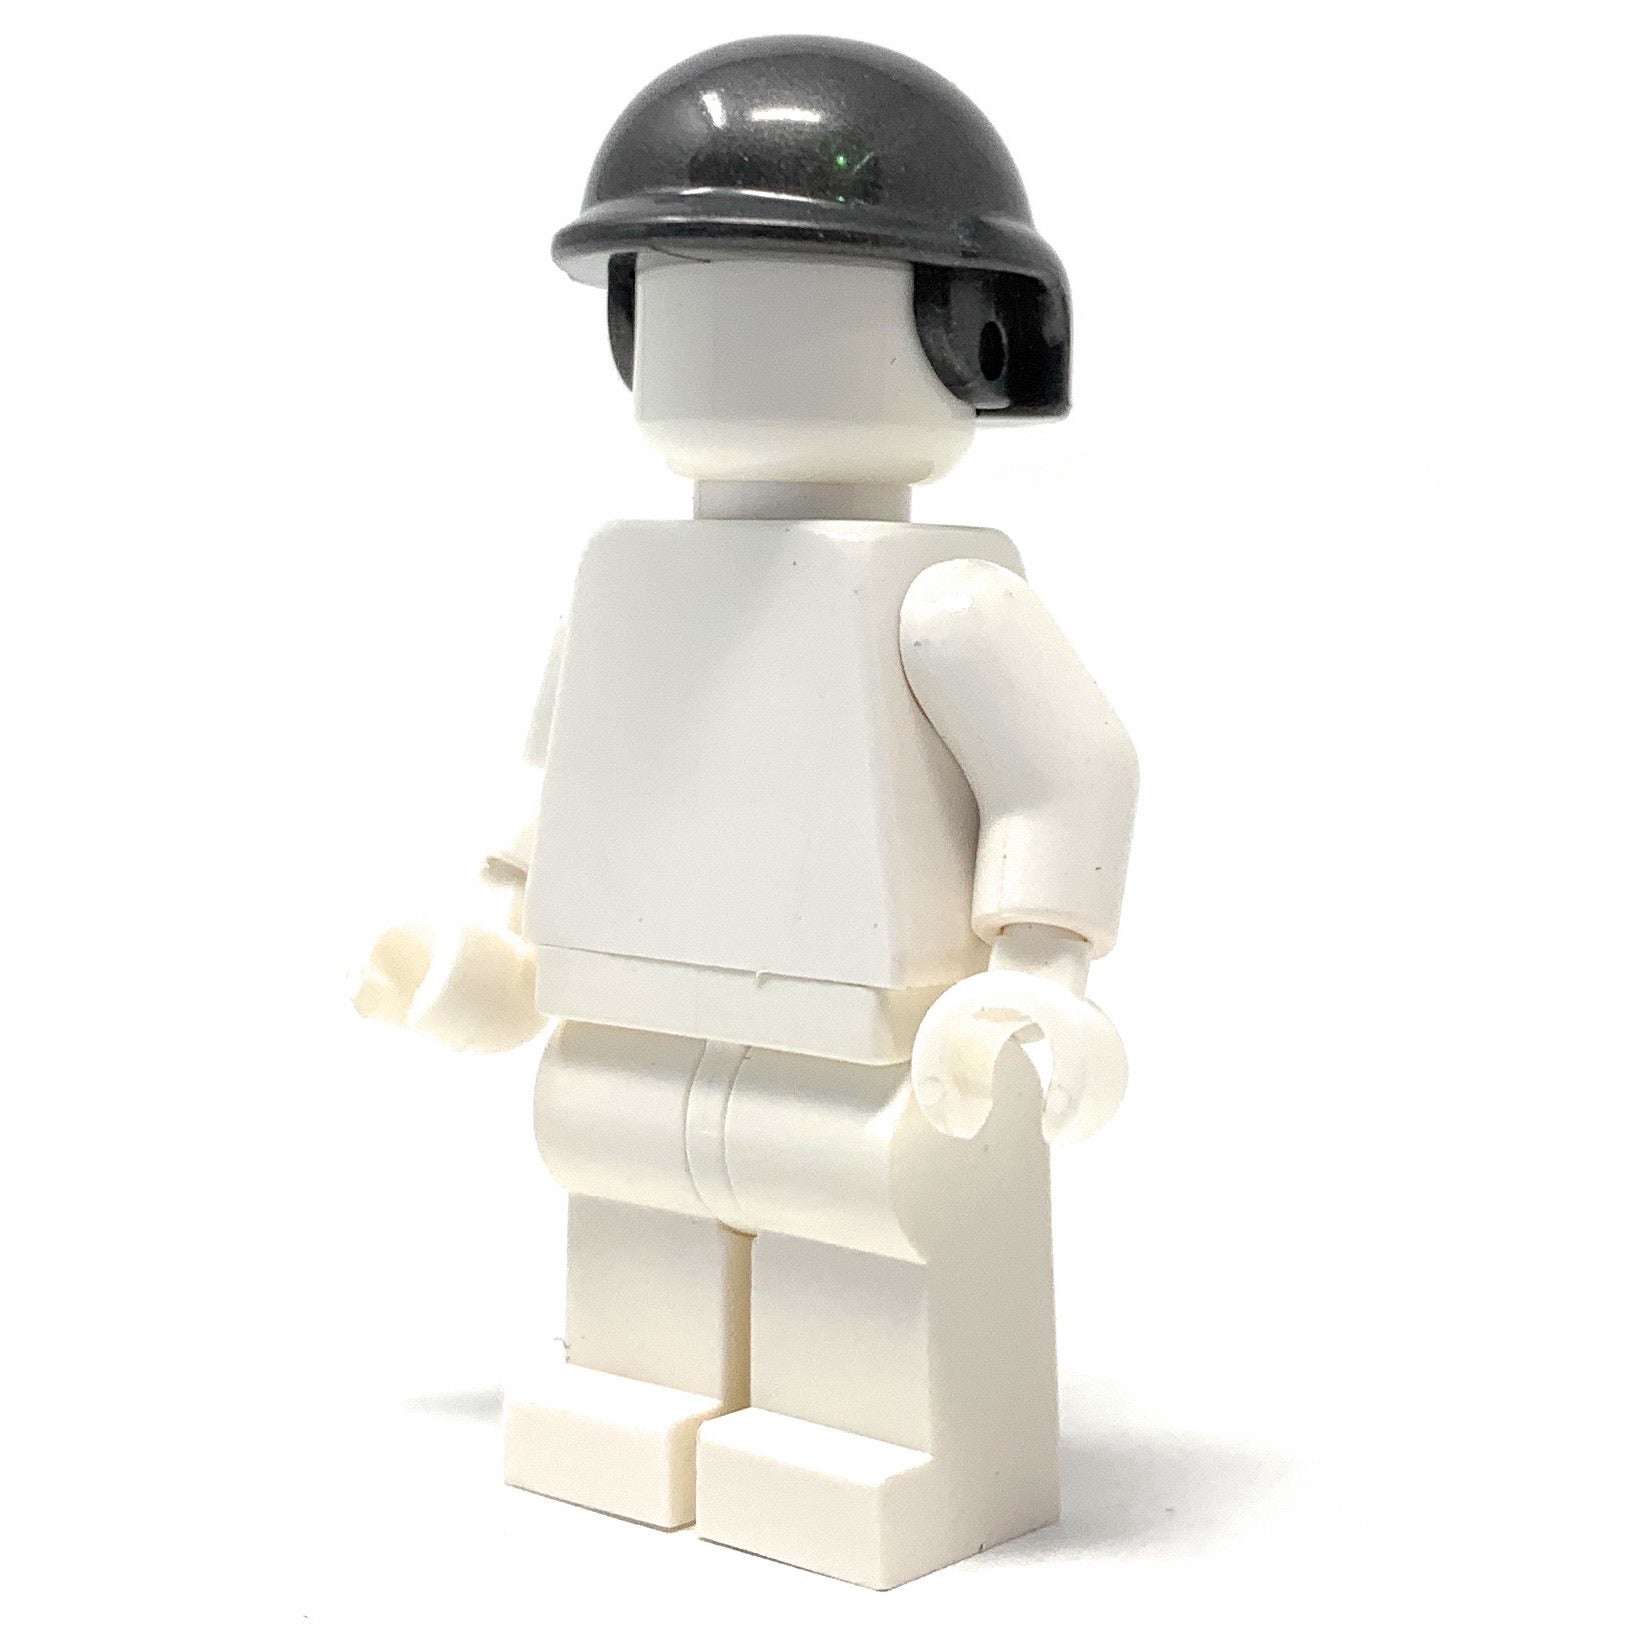 Steel Tactical Helmet - BrickForge Part for LEGO Minifigures